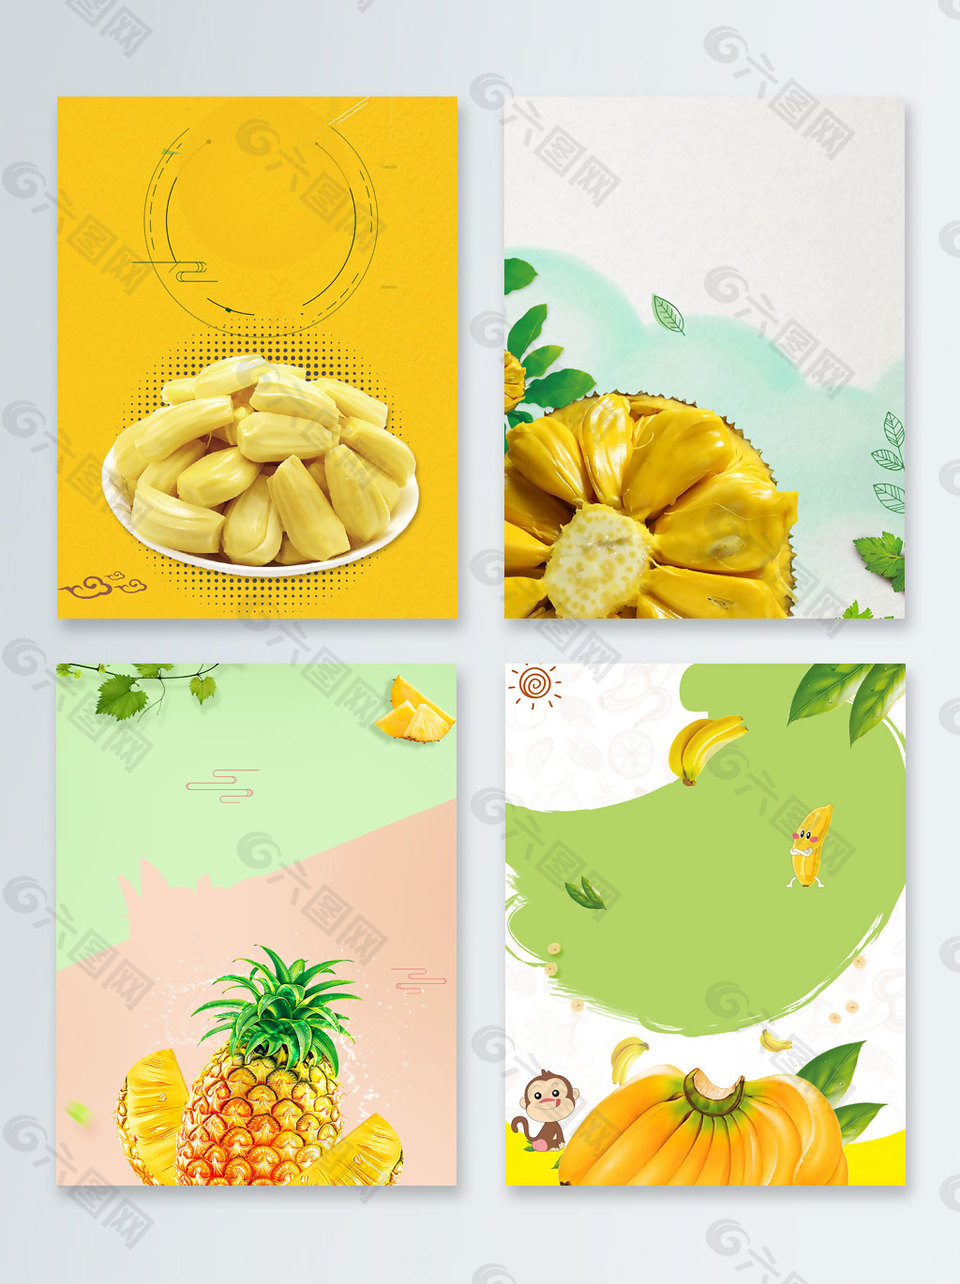 水果香蕉菠萝促销广告背景